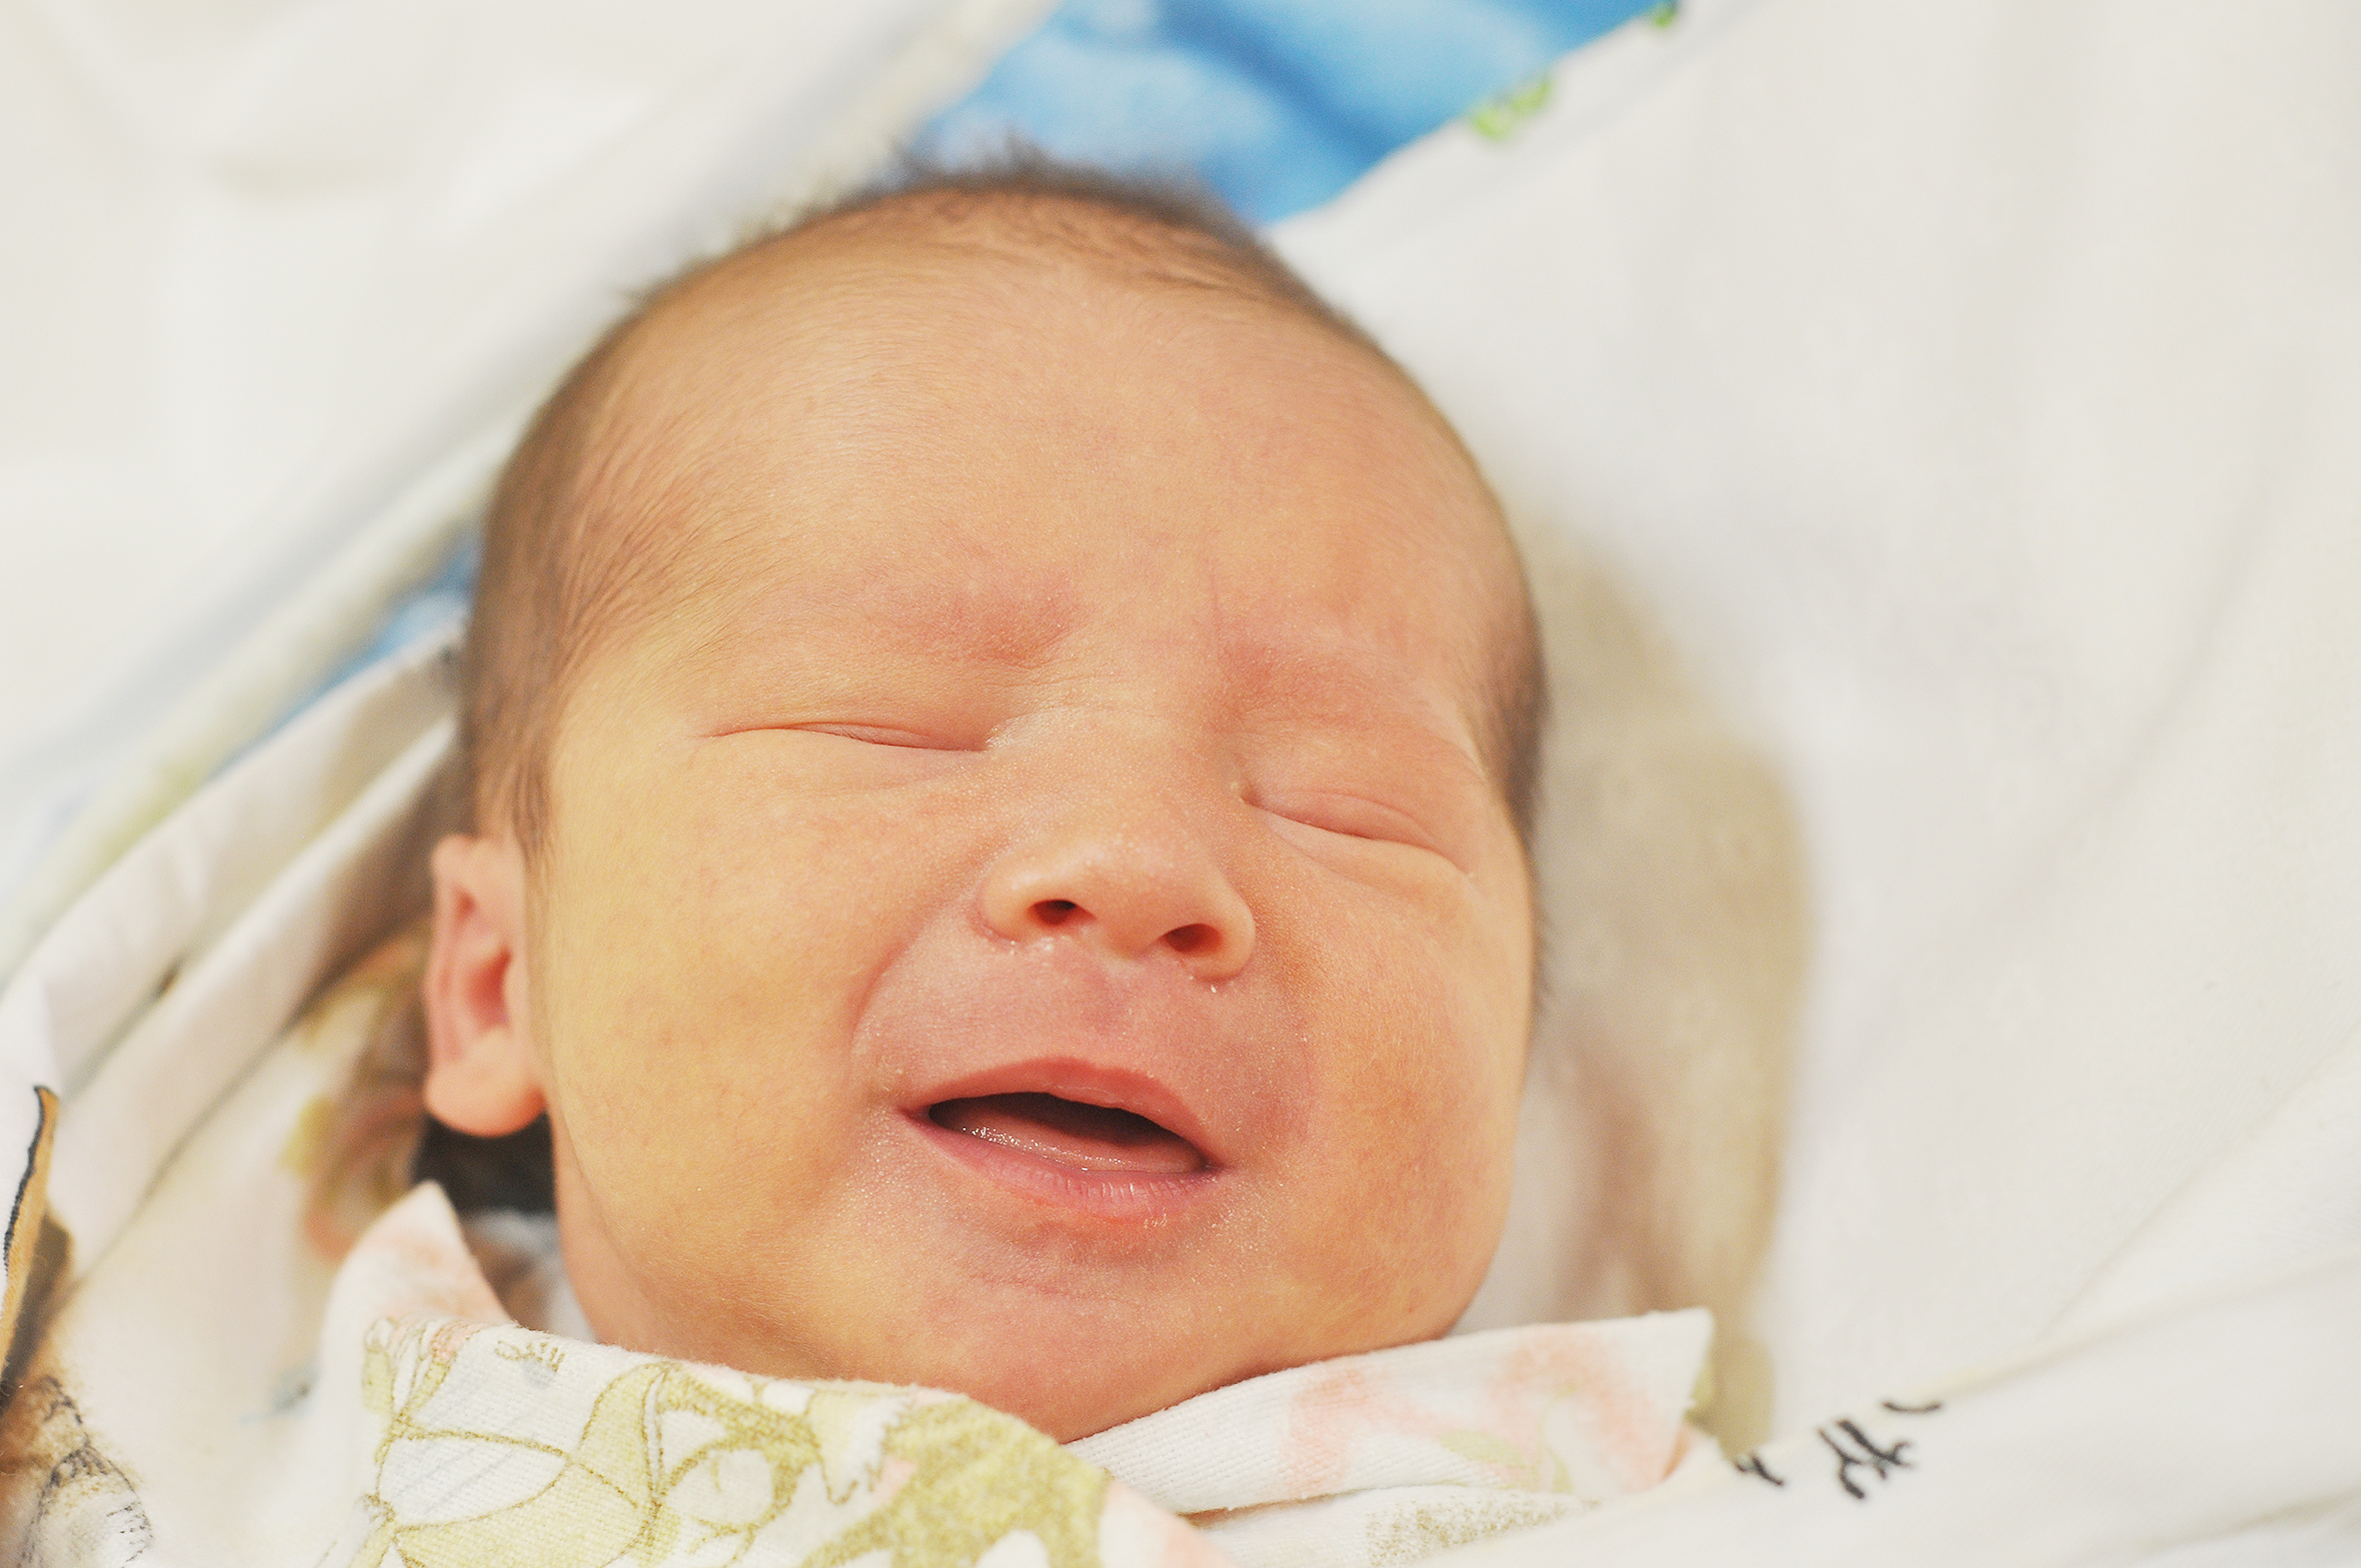 Leon Klima jest nowym raciborzaninem. Synek Marii i Mariusza urodził się 11 listopada o 20.15. Ważąc 3510 g, mierzył 55 cm. W domu czeka siostra Anna.